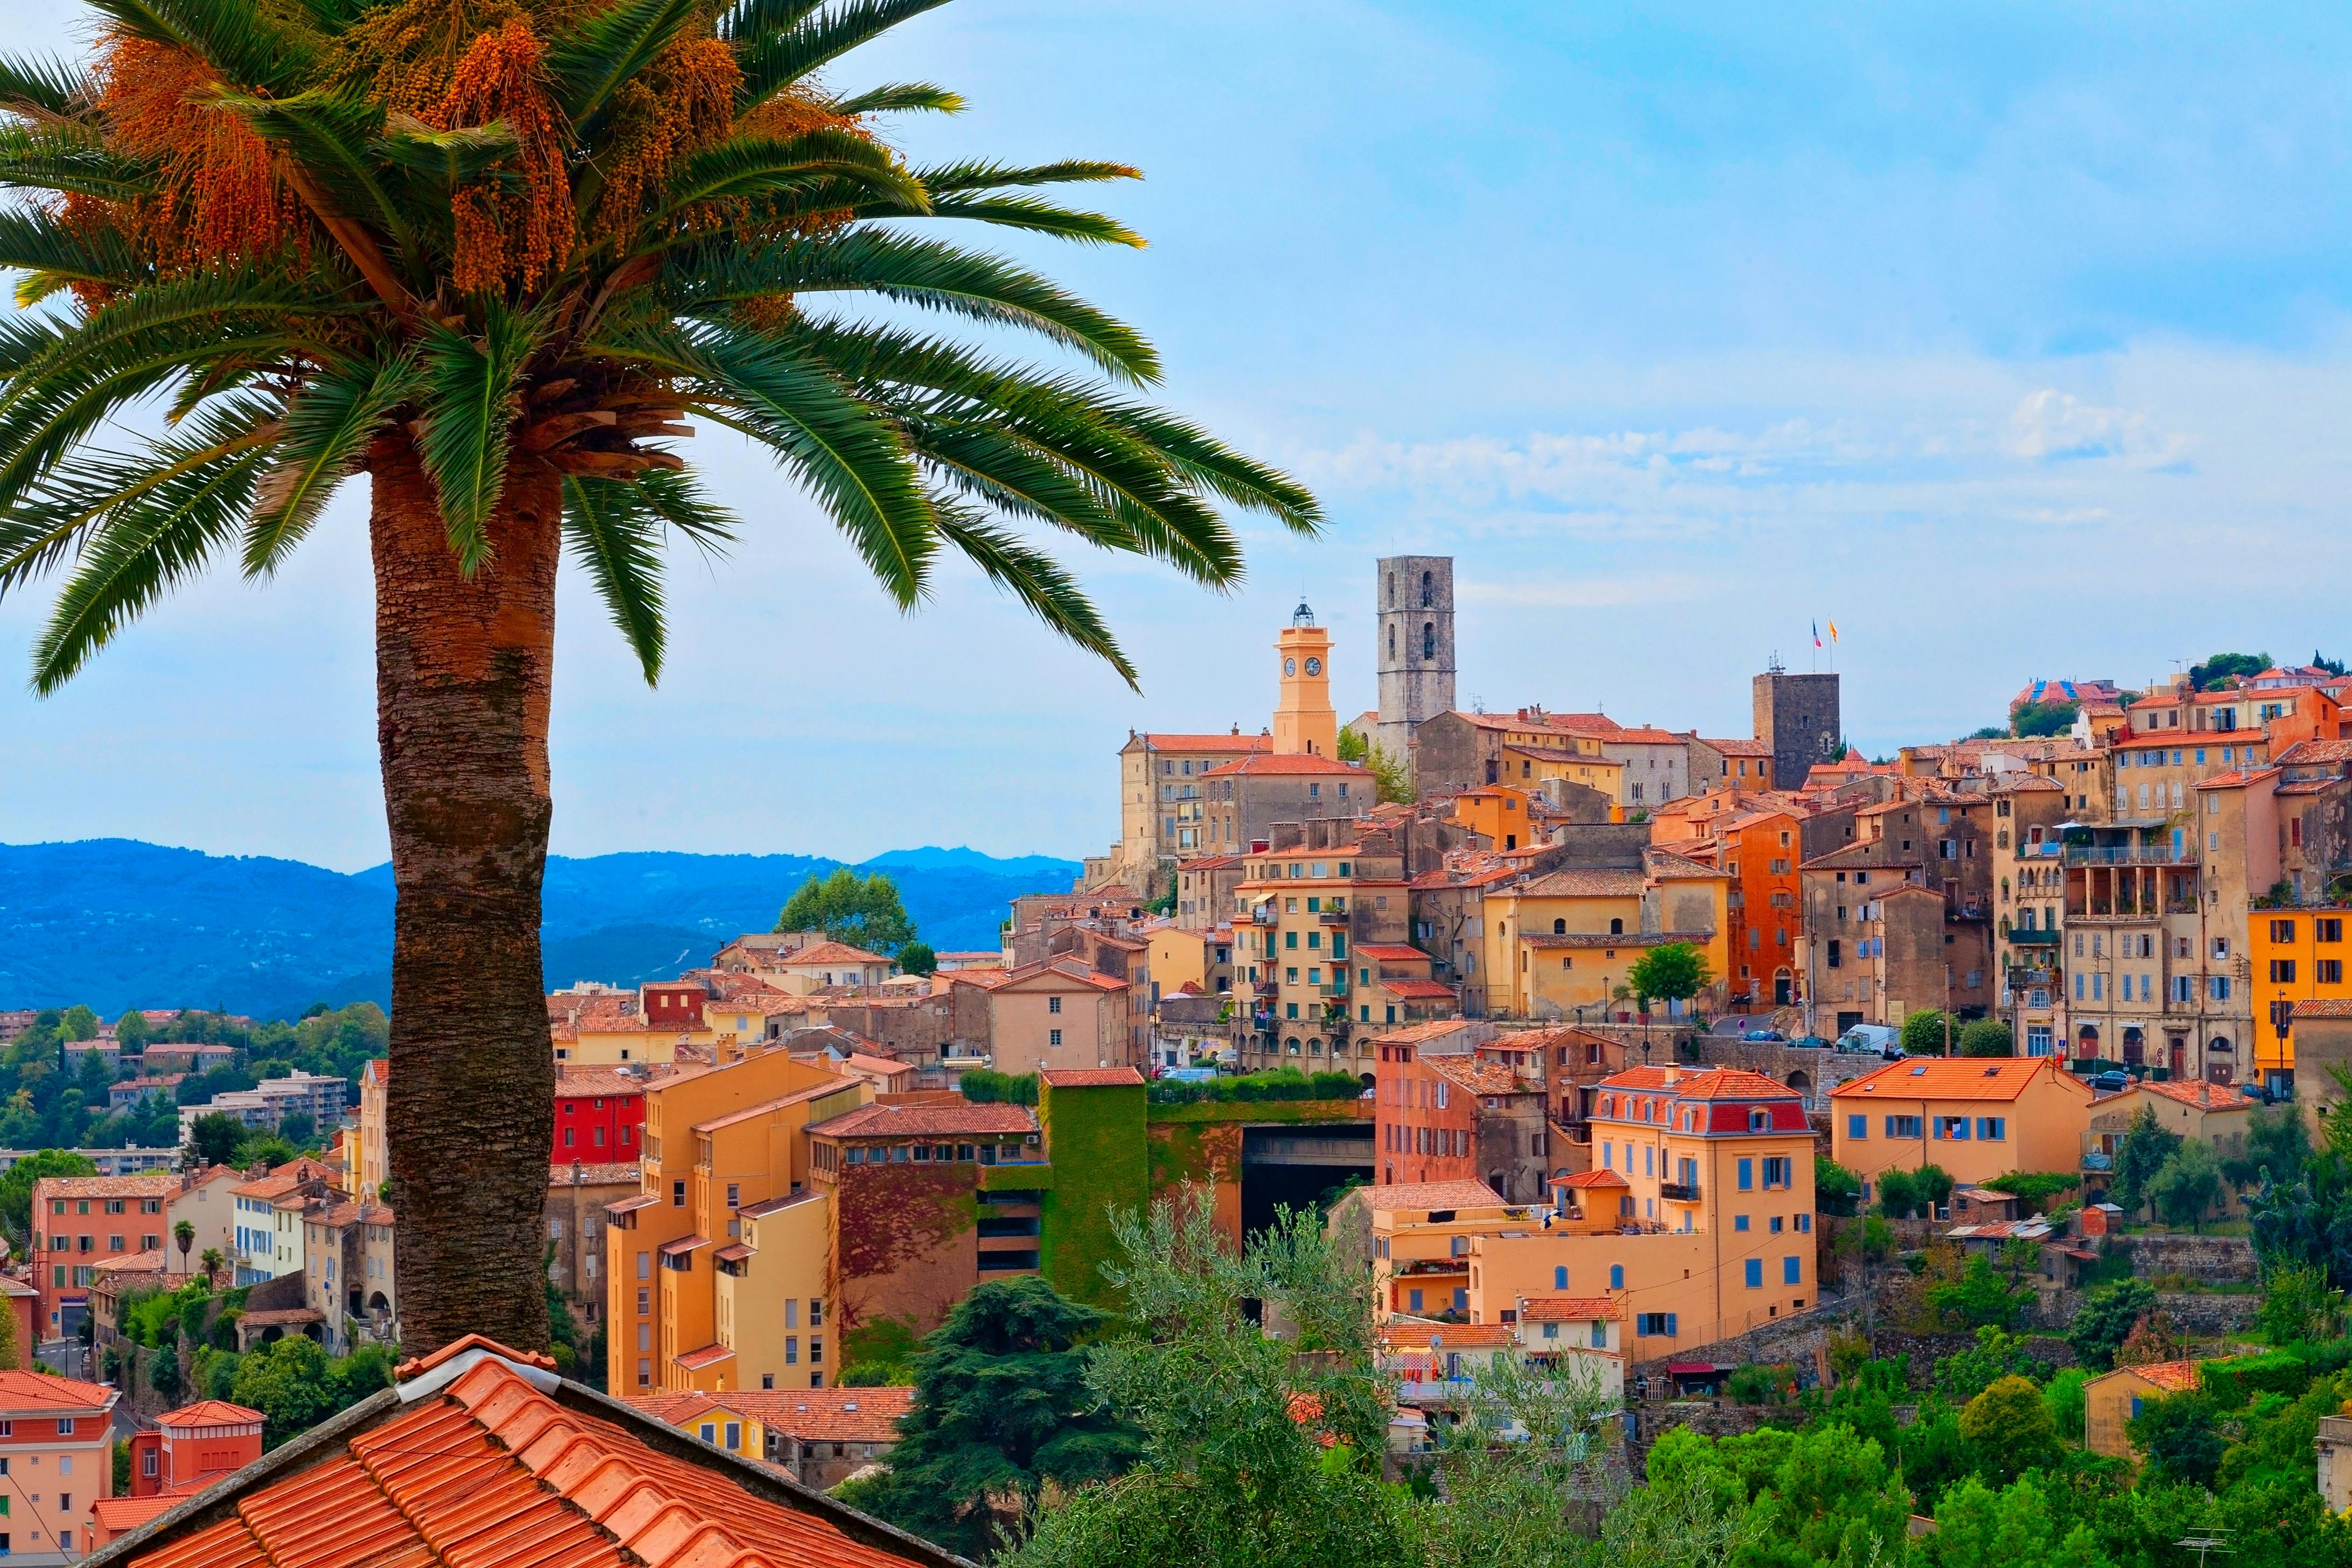 Excursão privada ao campo da costa oeste de Provence saindo de Nice